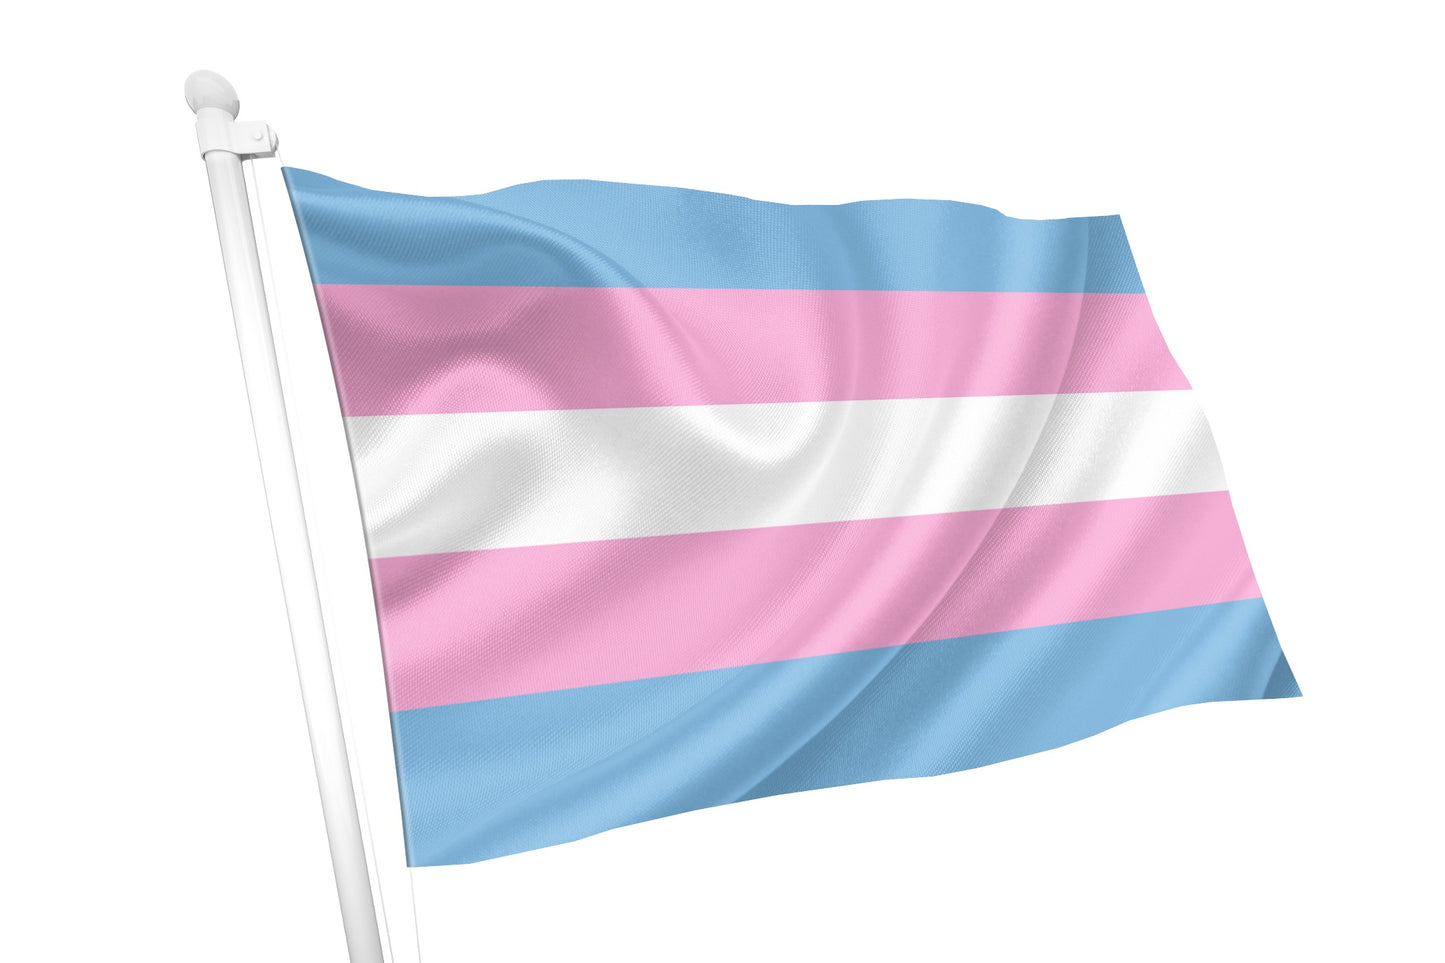 Bandeira do Orgulho Transgênero